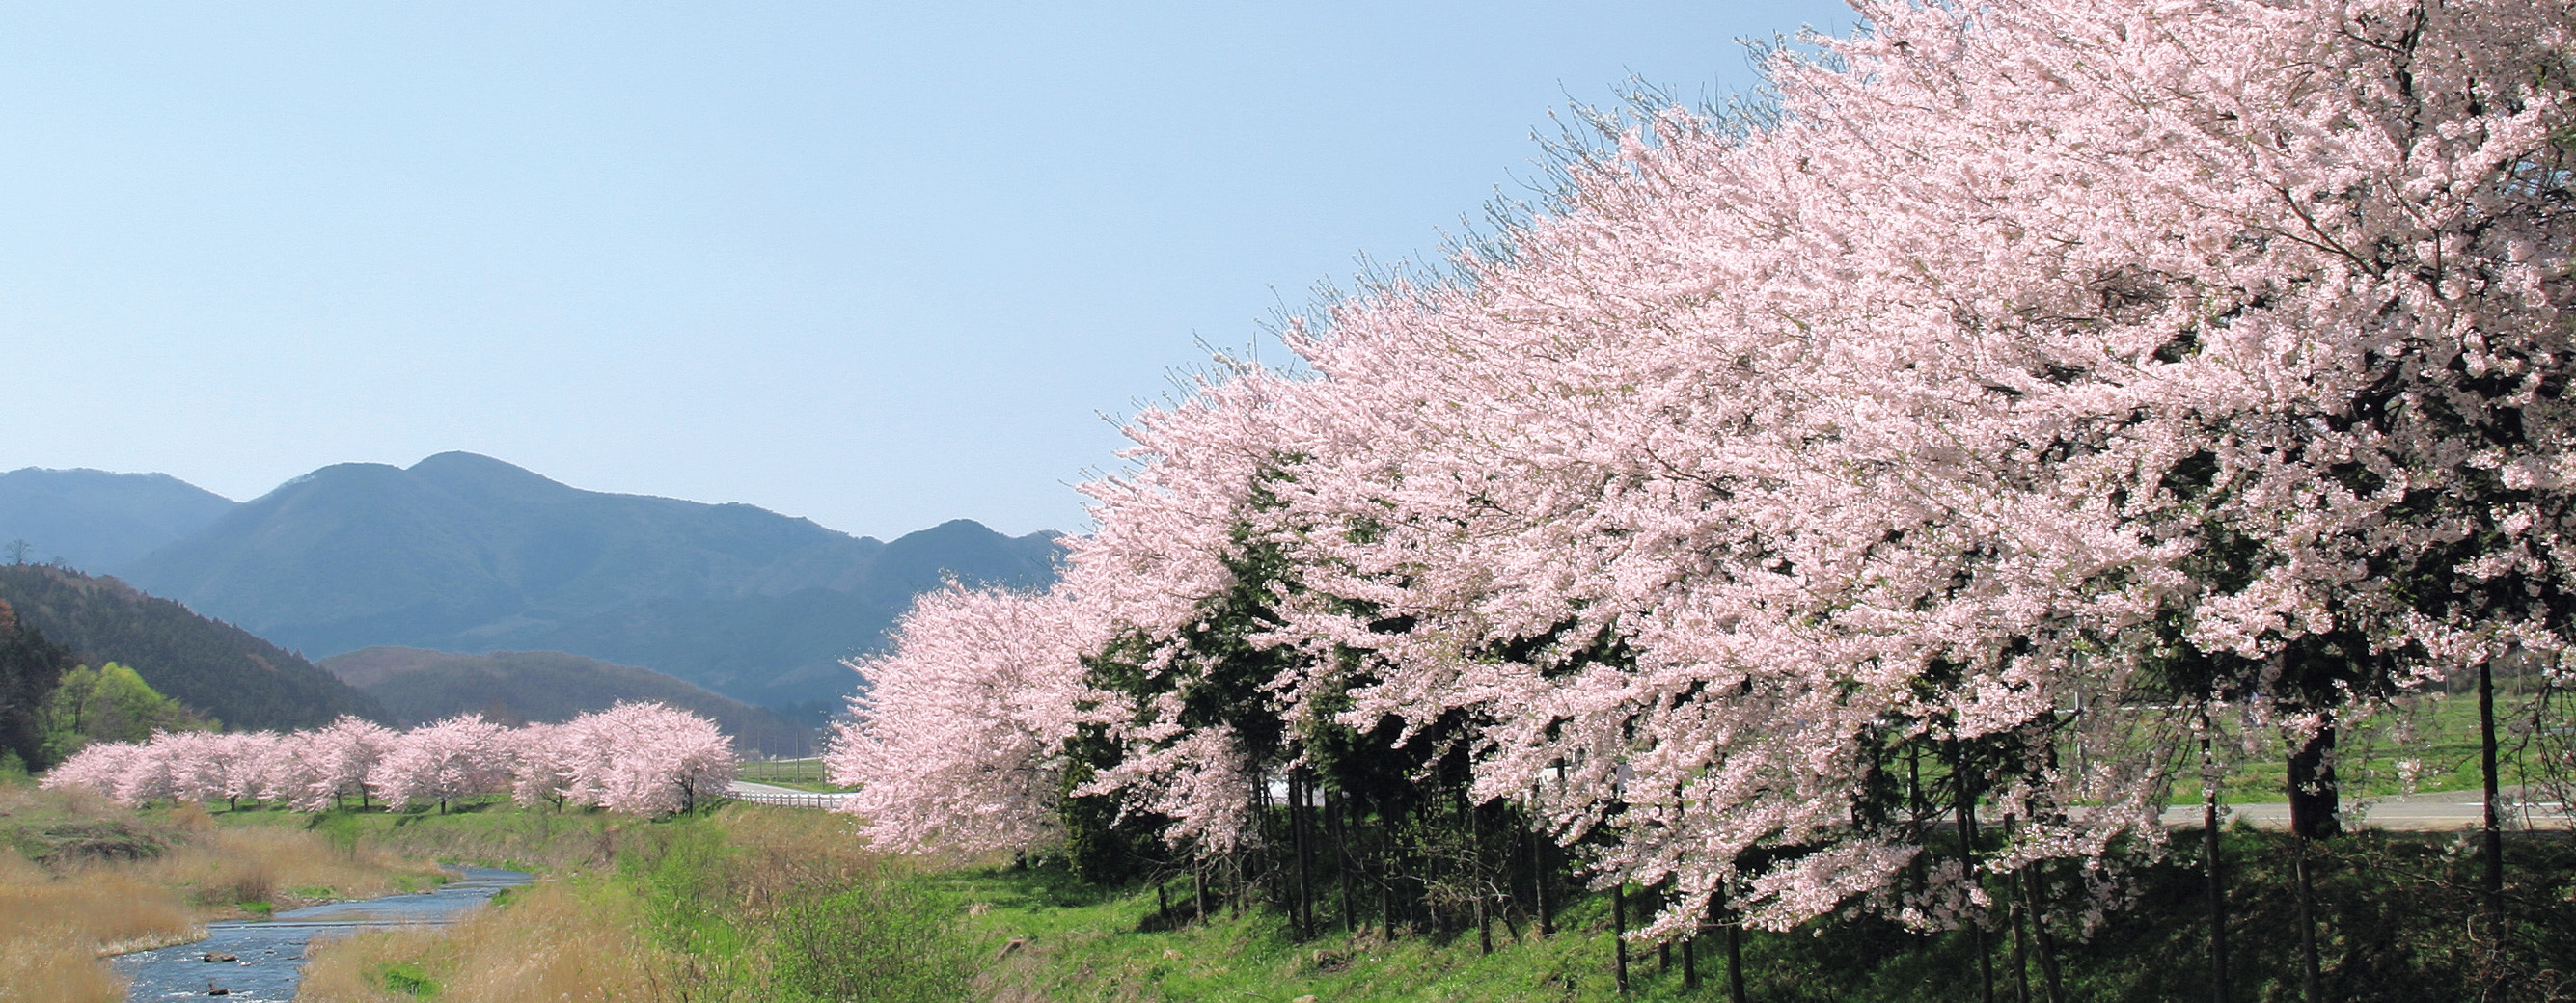 釈迦堂川沿いの桜並木